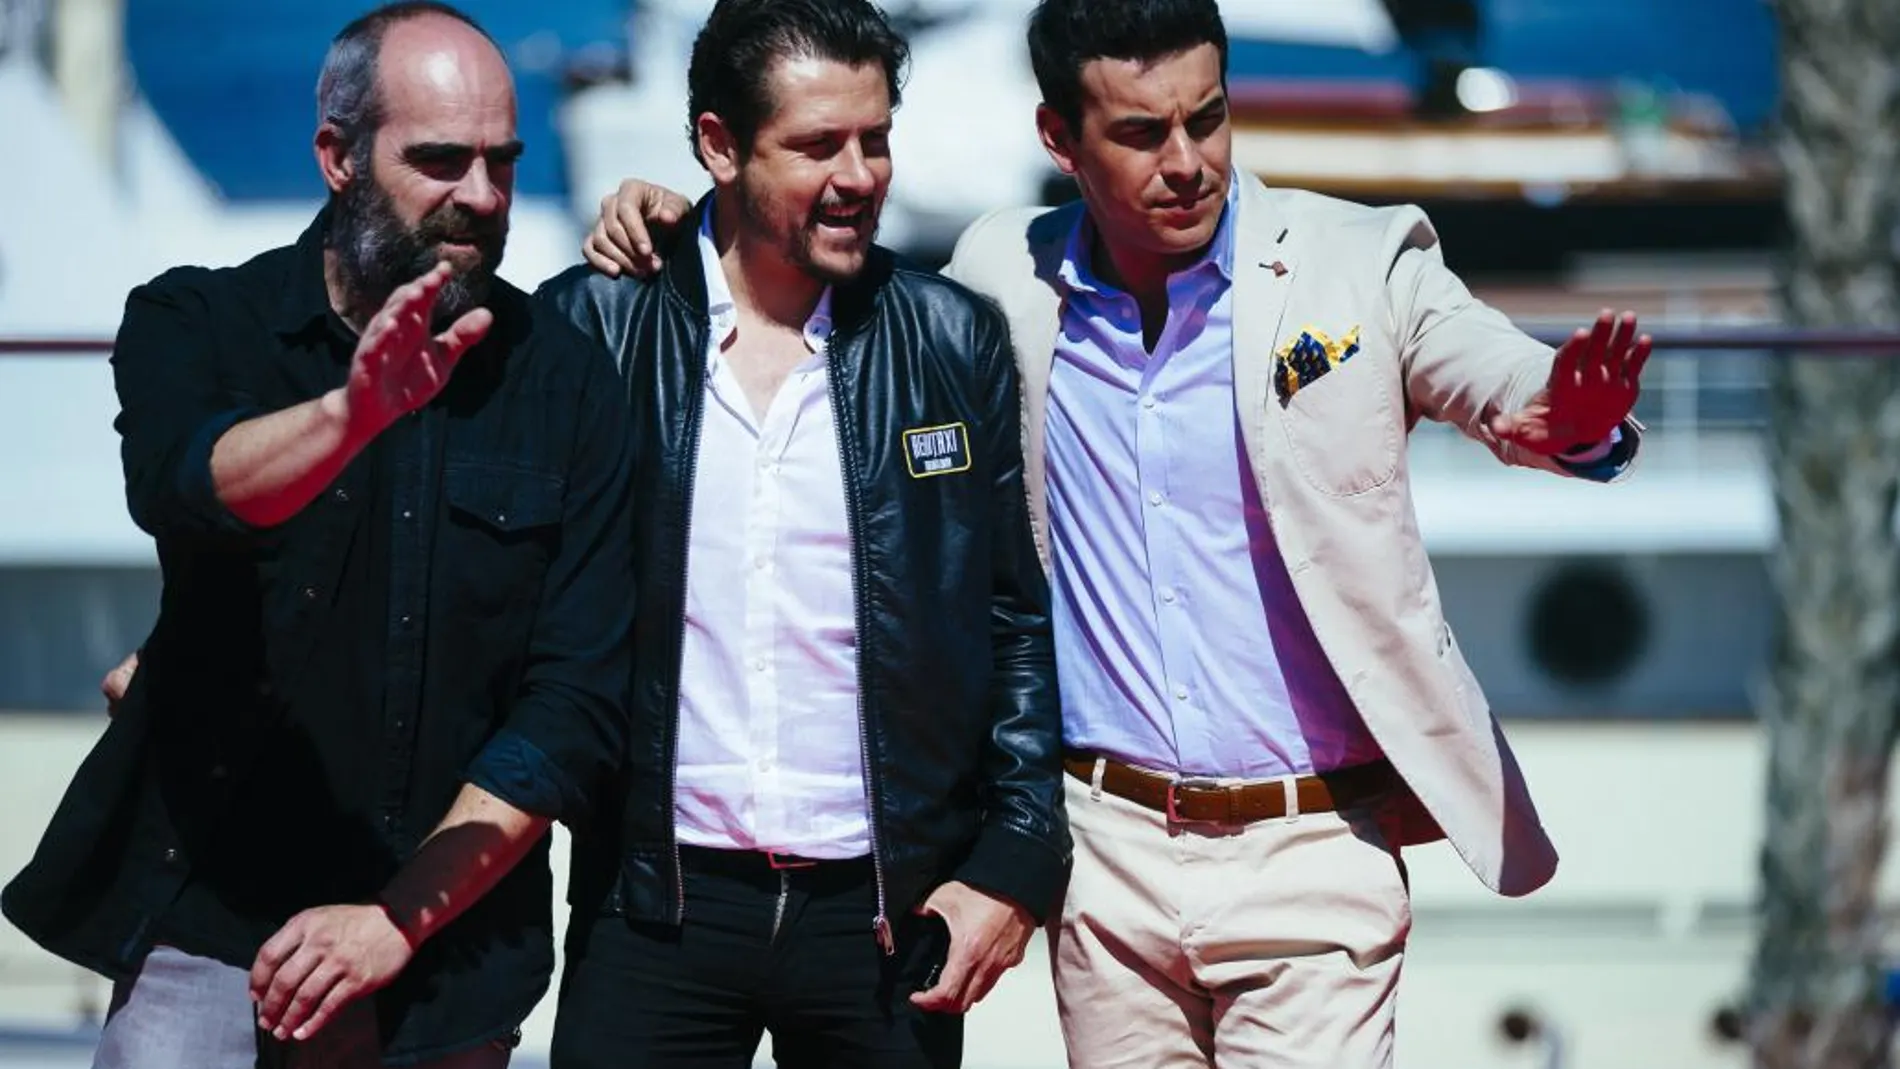 El director Kike Maillo (c), junto a los actores Mario Casas (d) y Luis Tosar, posan en el puerto malagueño, tras presentar la película "Toro"